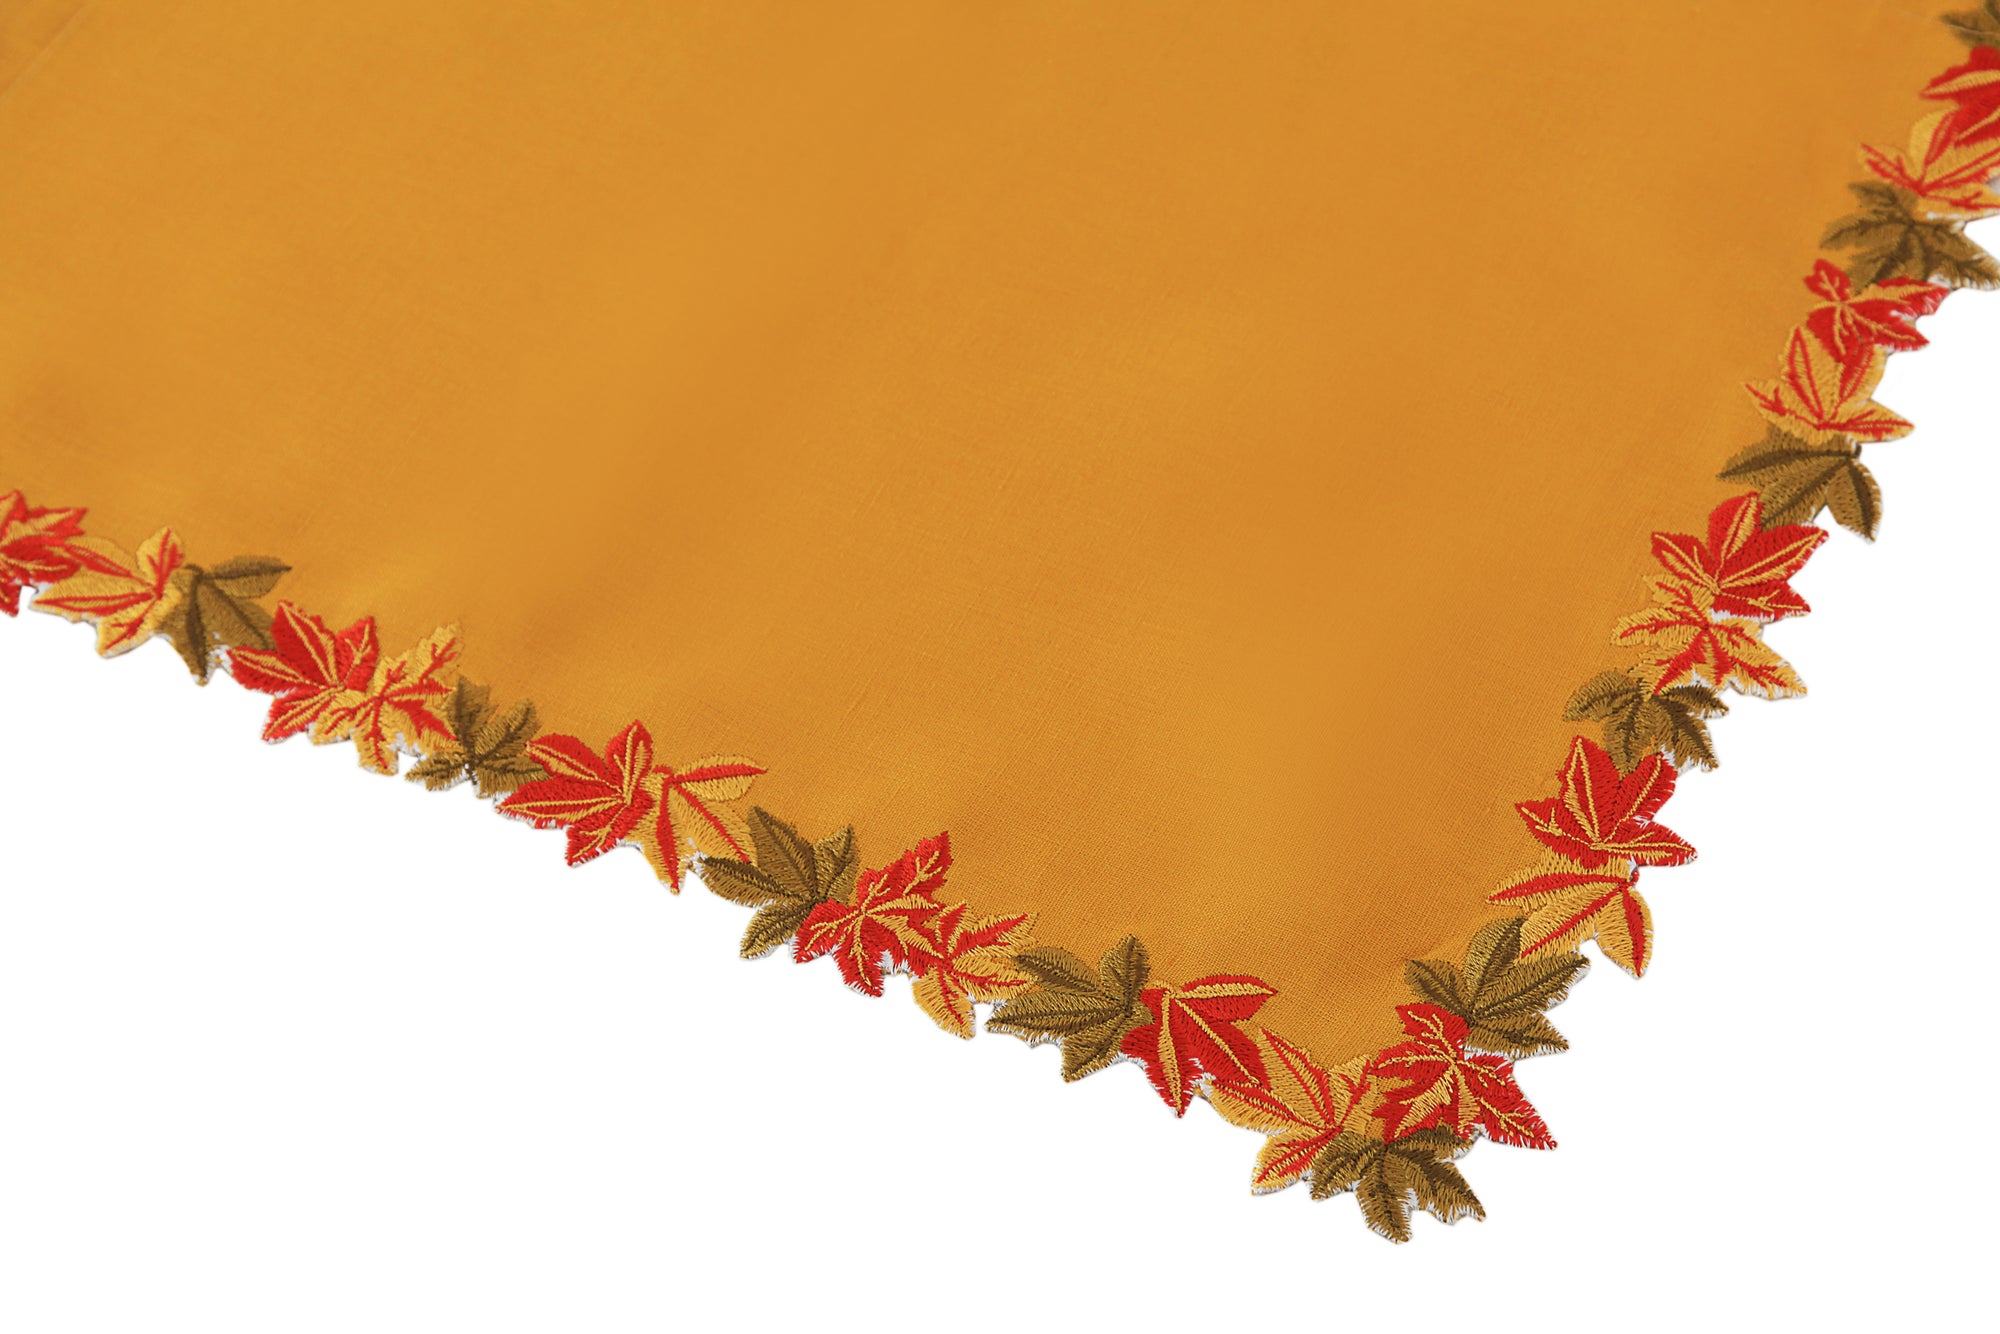 Autumn Linen Placemats